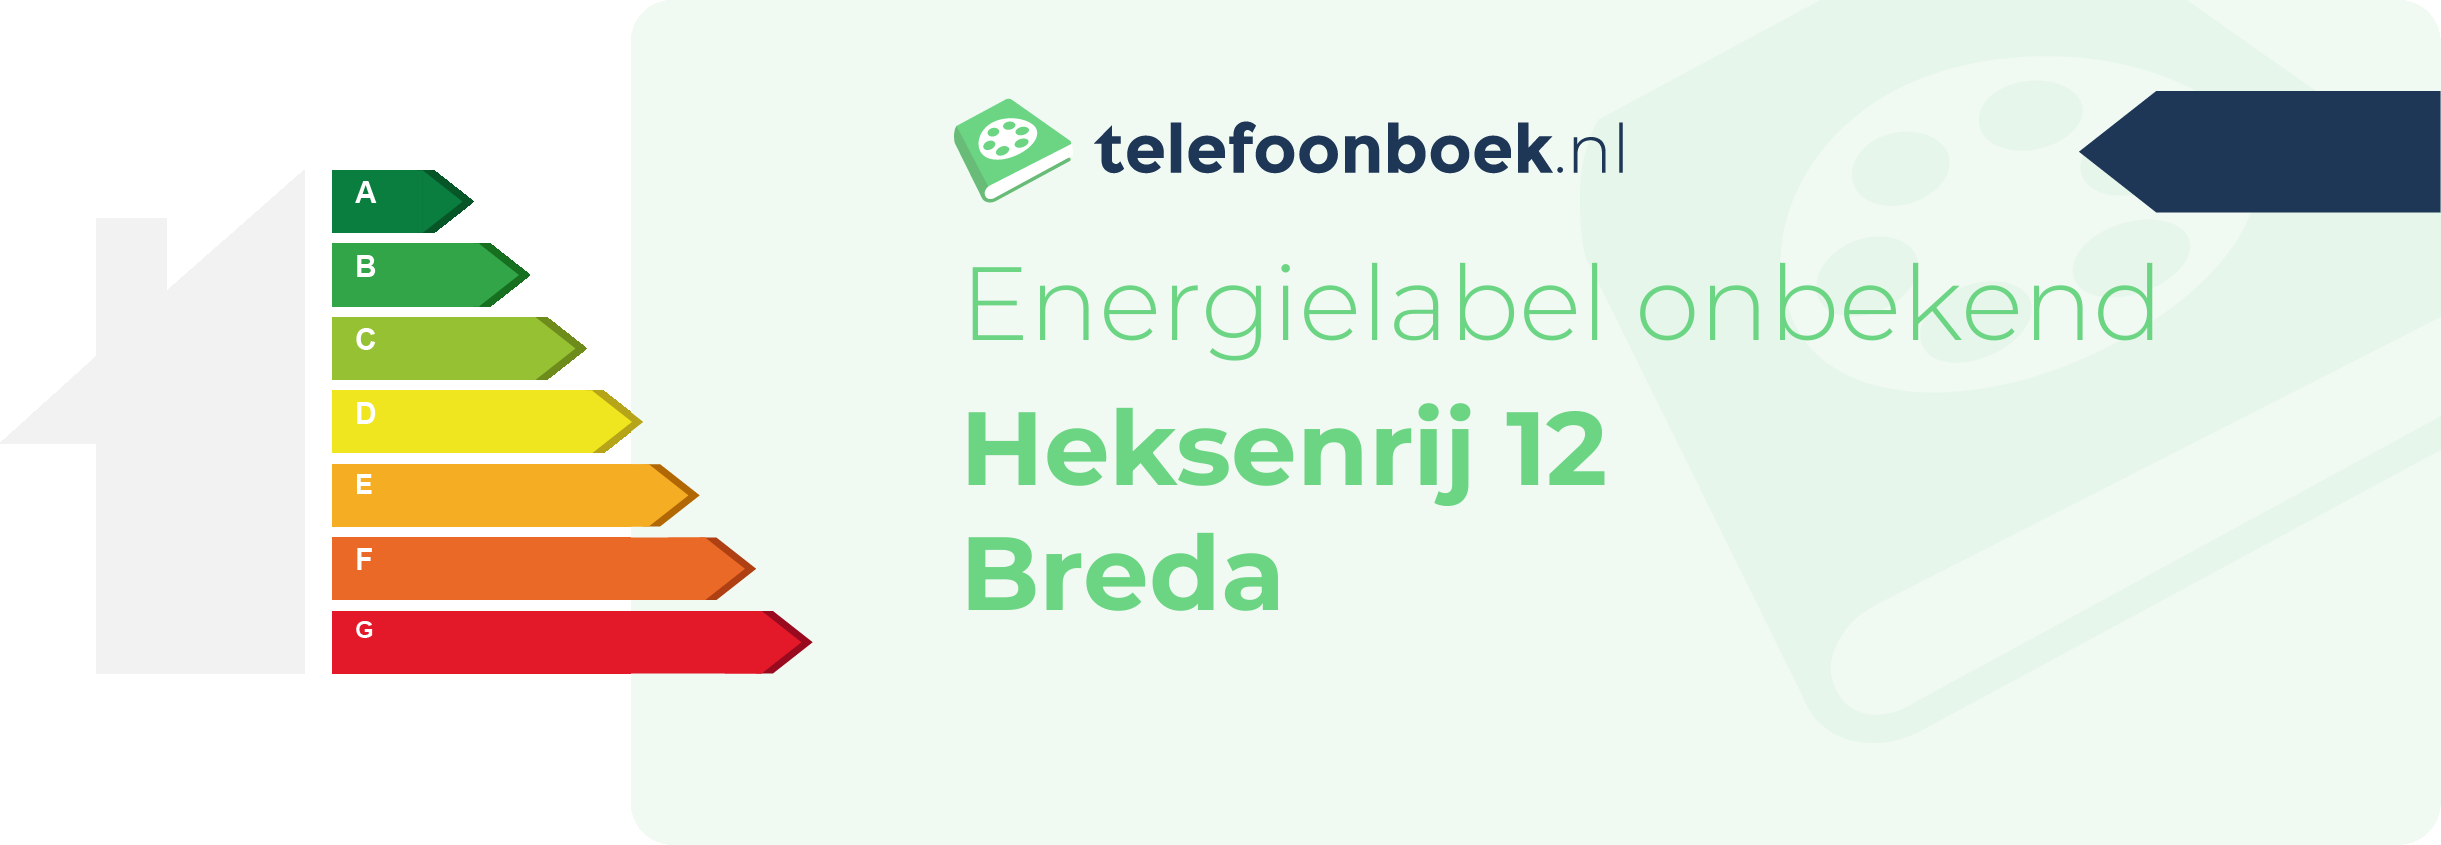 Energielabel Heksenrij 12 Breda